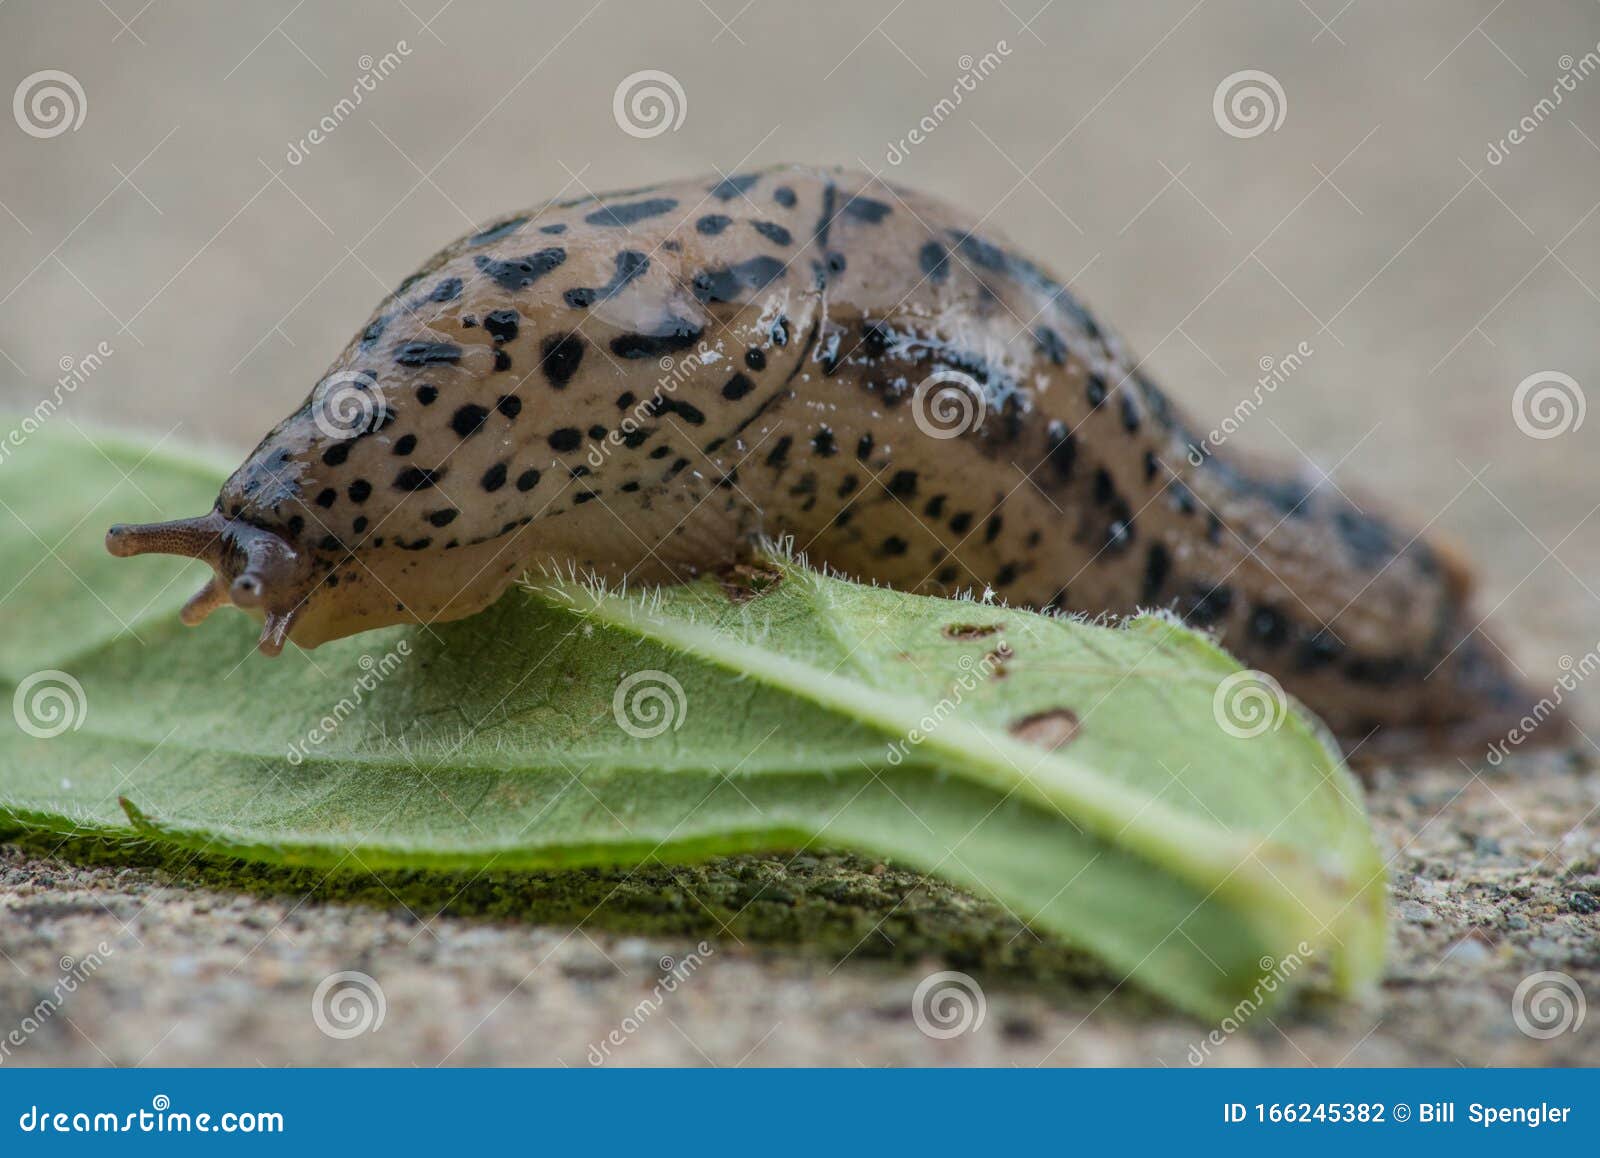 common land slug